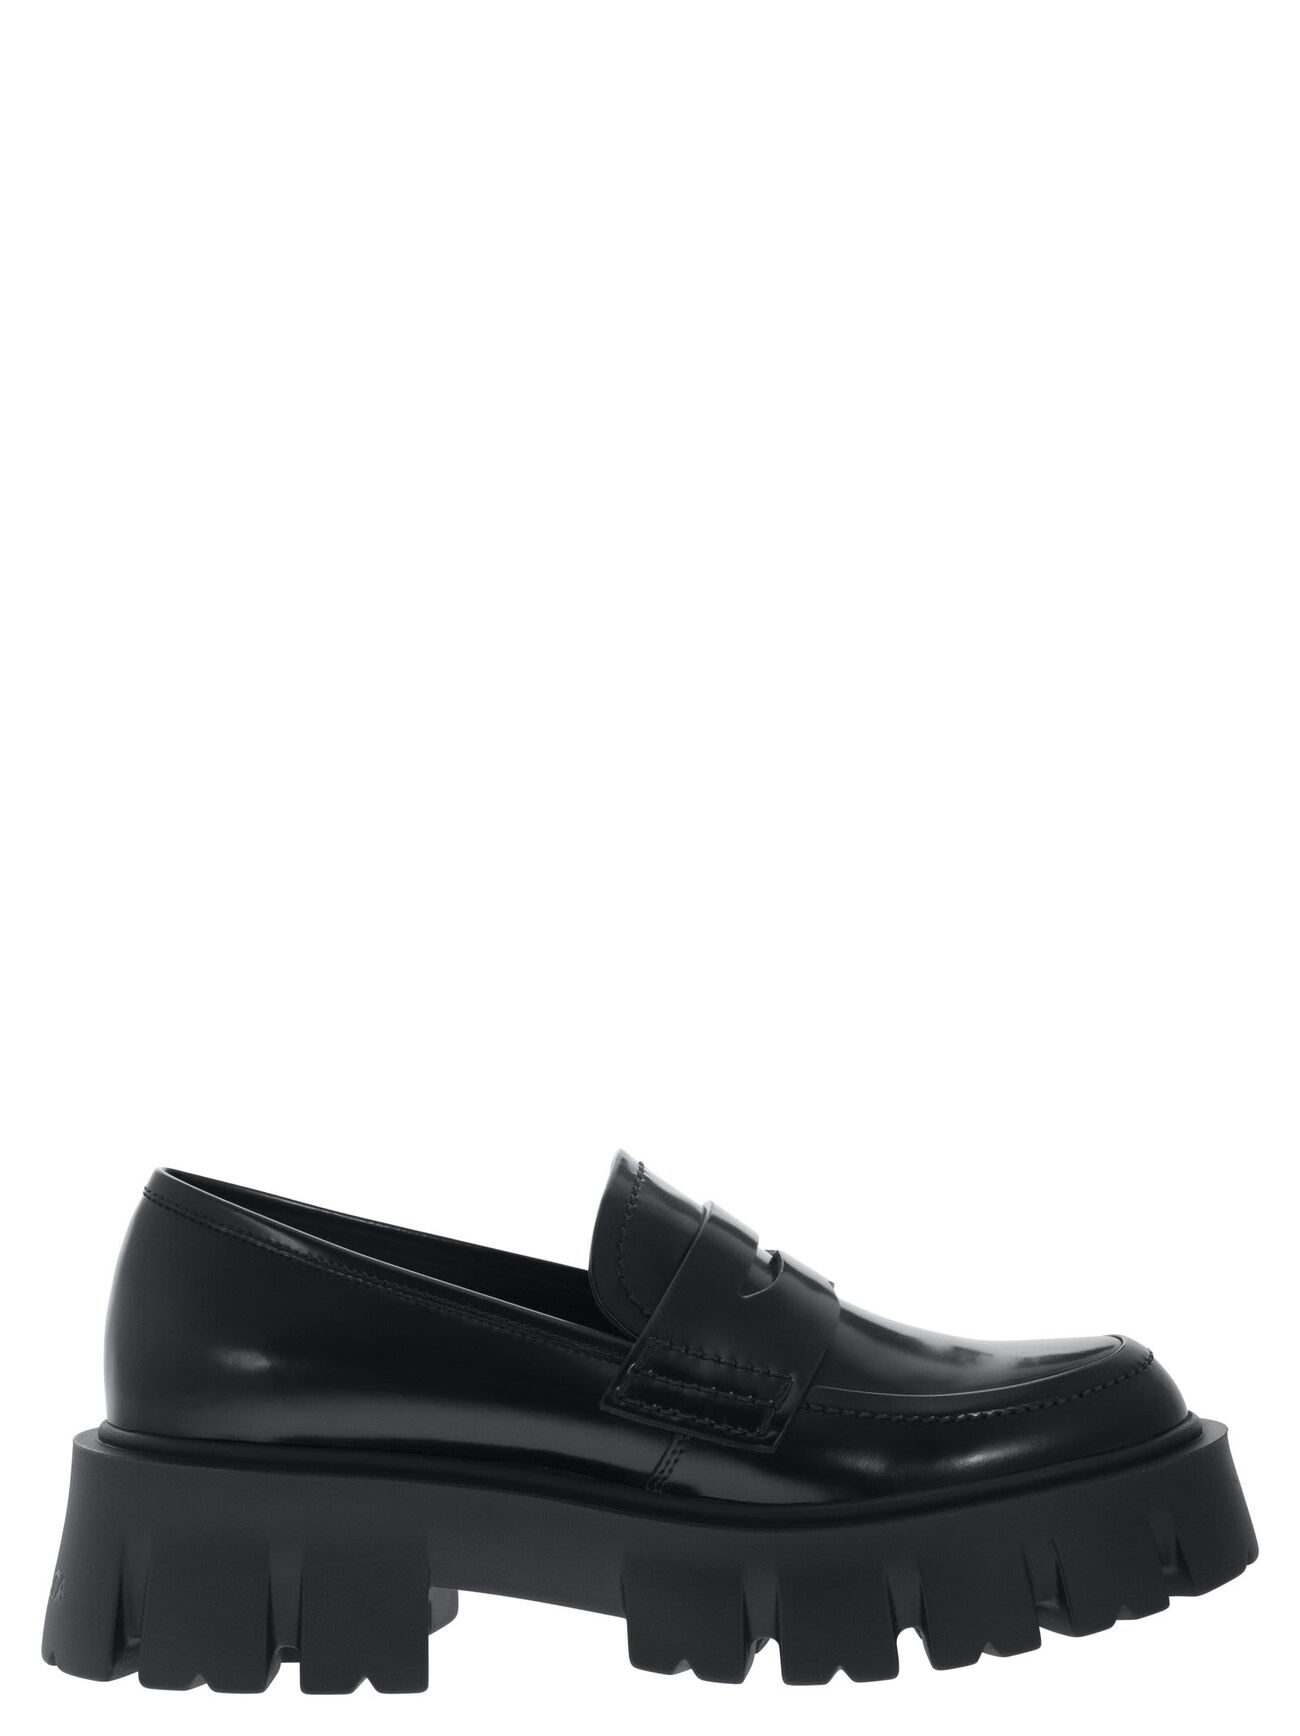 Premiata Ascot - Leather Loafers in black